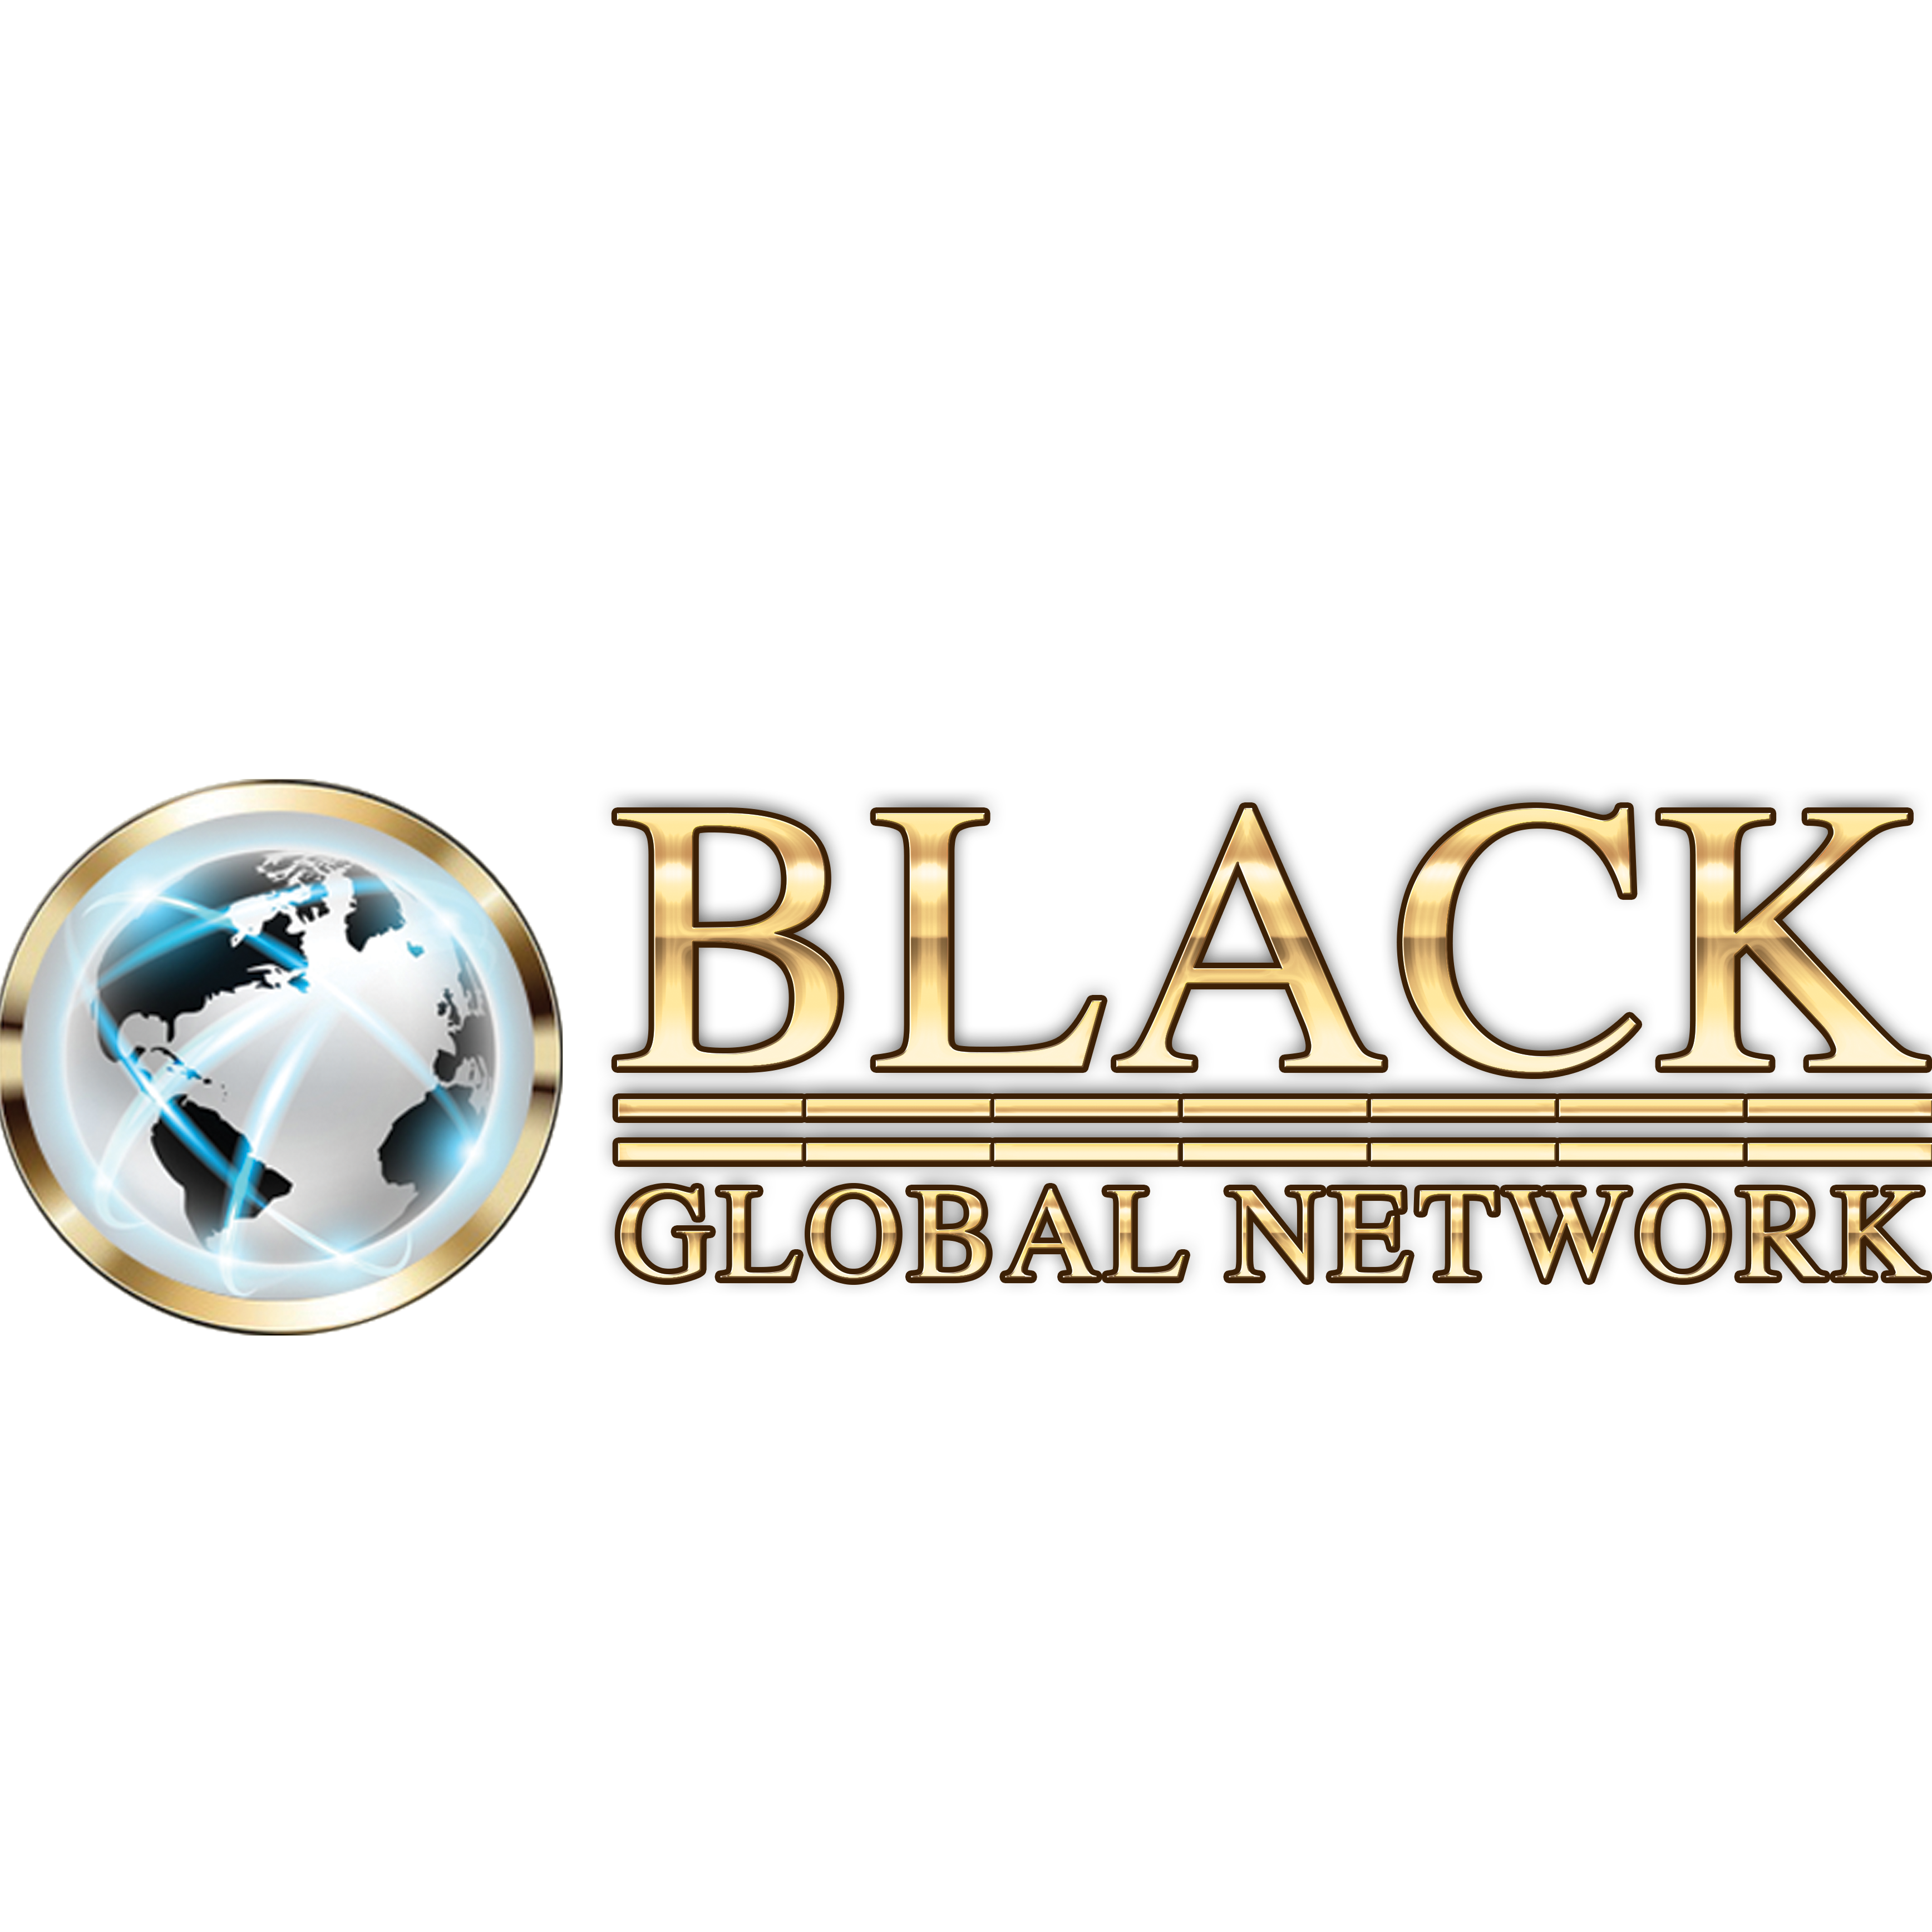 Black Global Network